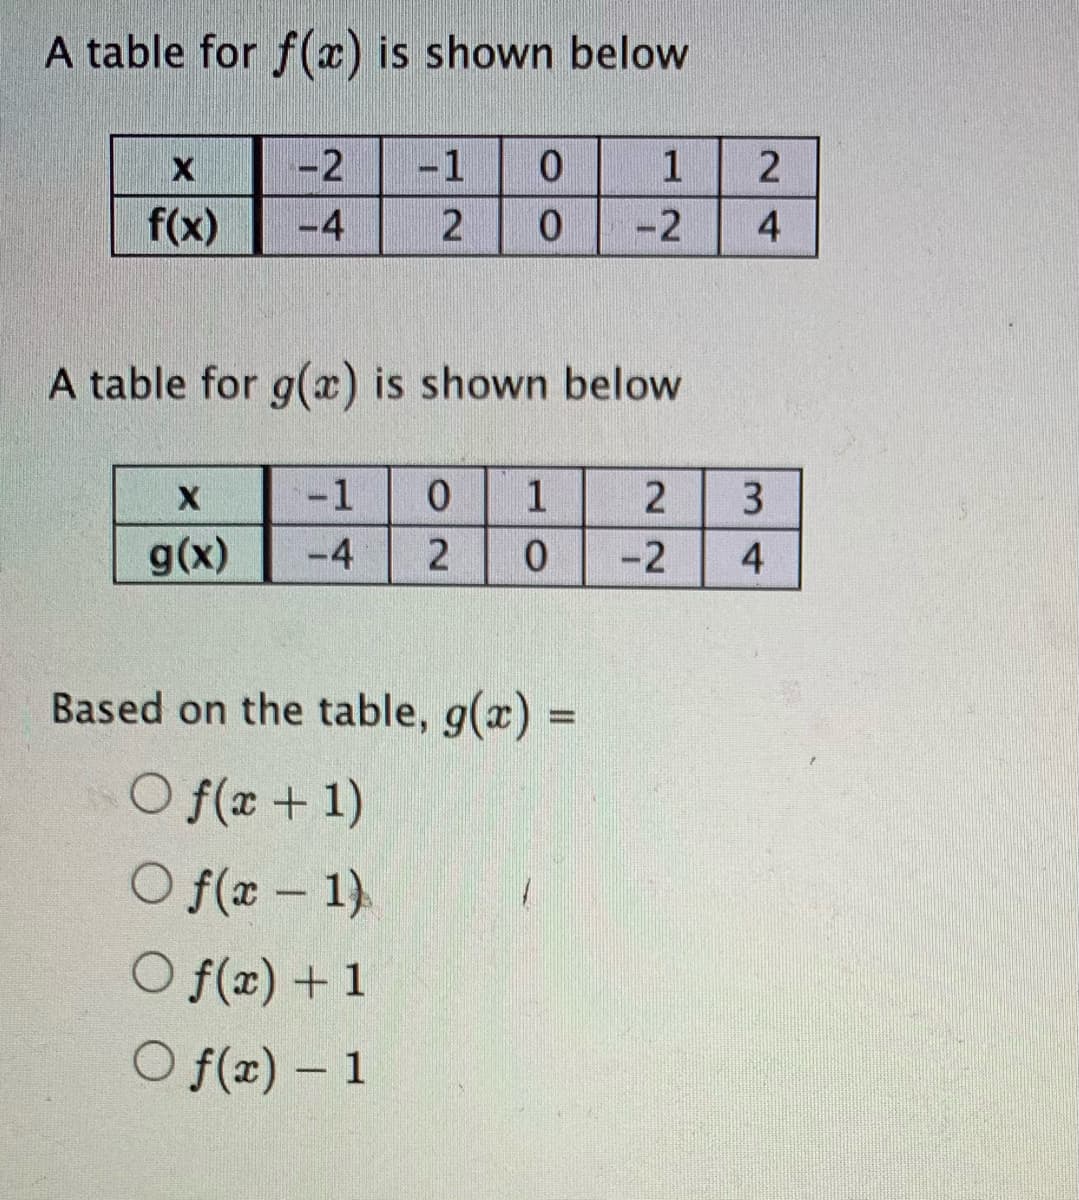 A table for f(x) is shown below
-2
-1
1
f(x)
-4
2
-2
A table for g(x) is shown below
-1
1
g(x)
-4
-2
4
Based on the table, g(x) =
O f(x + 1)
O f(x – 1).
O f(x) + 1
O f(x) – 1
-
24
3.
